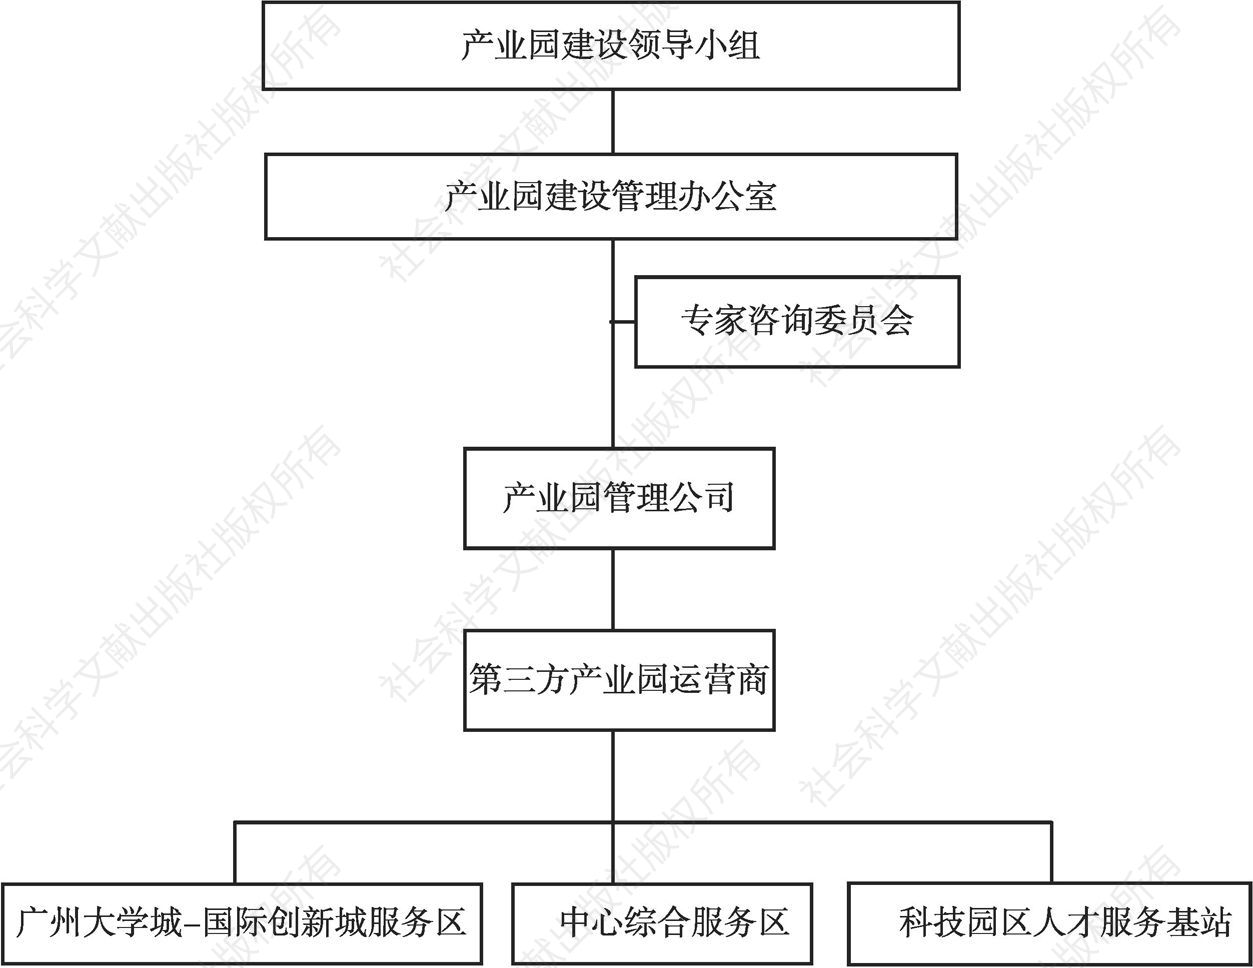 图1 番禺园区管理架构